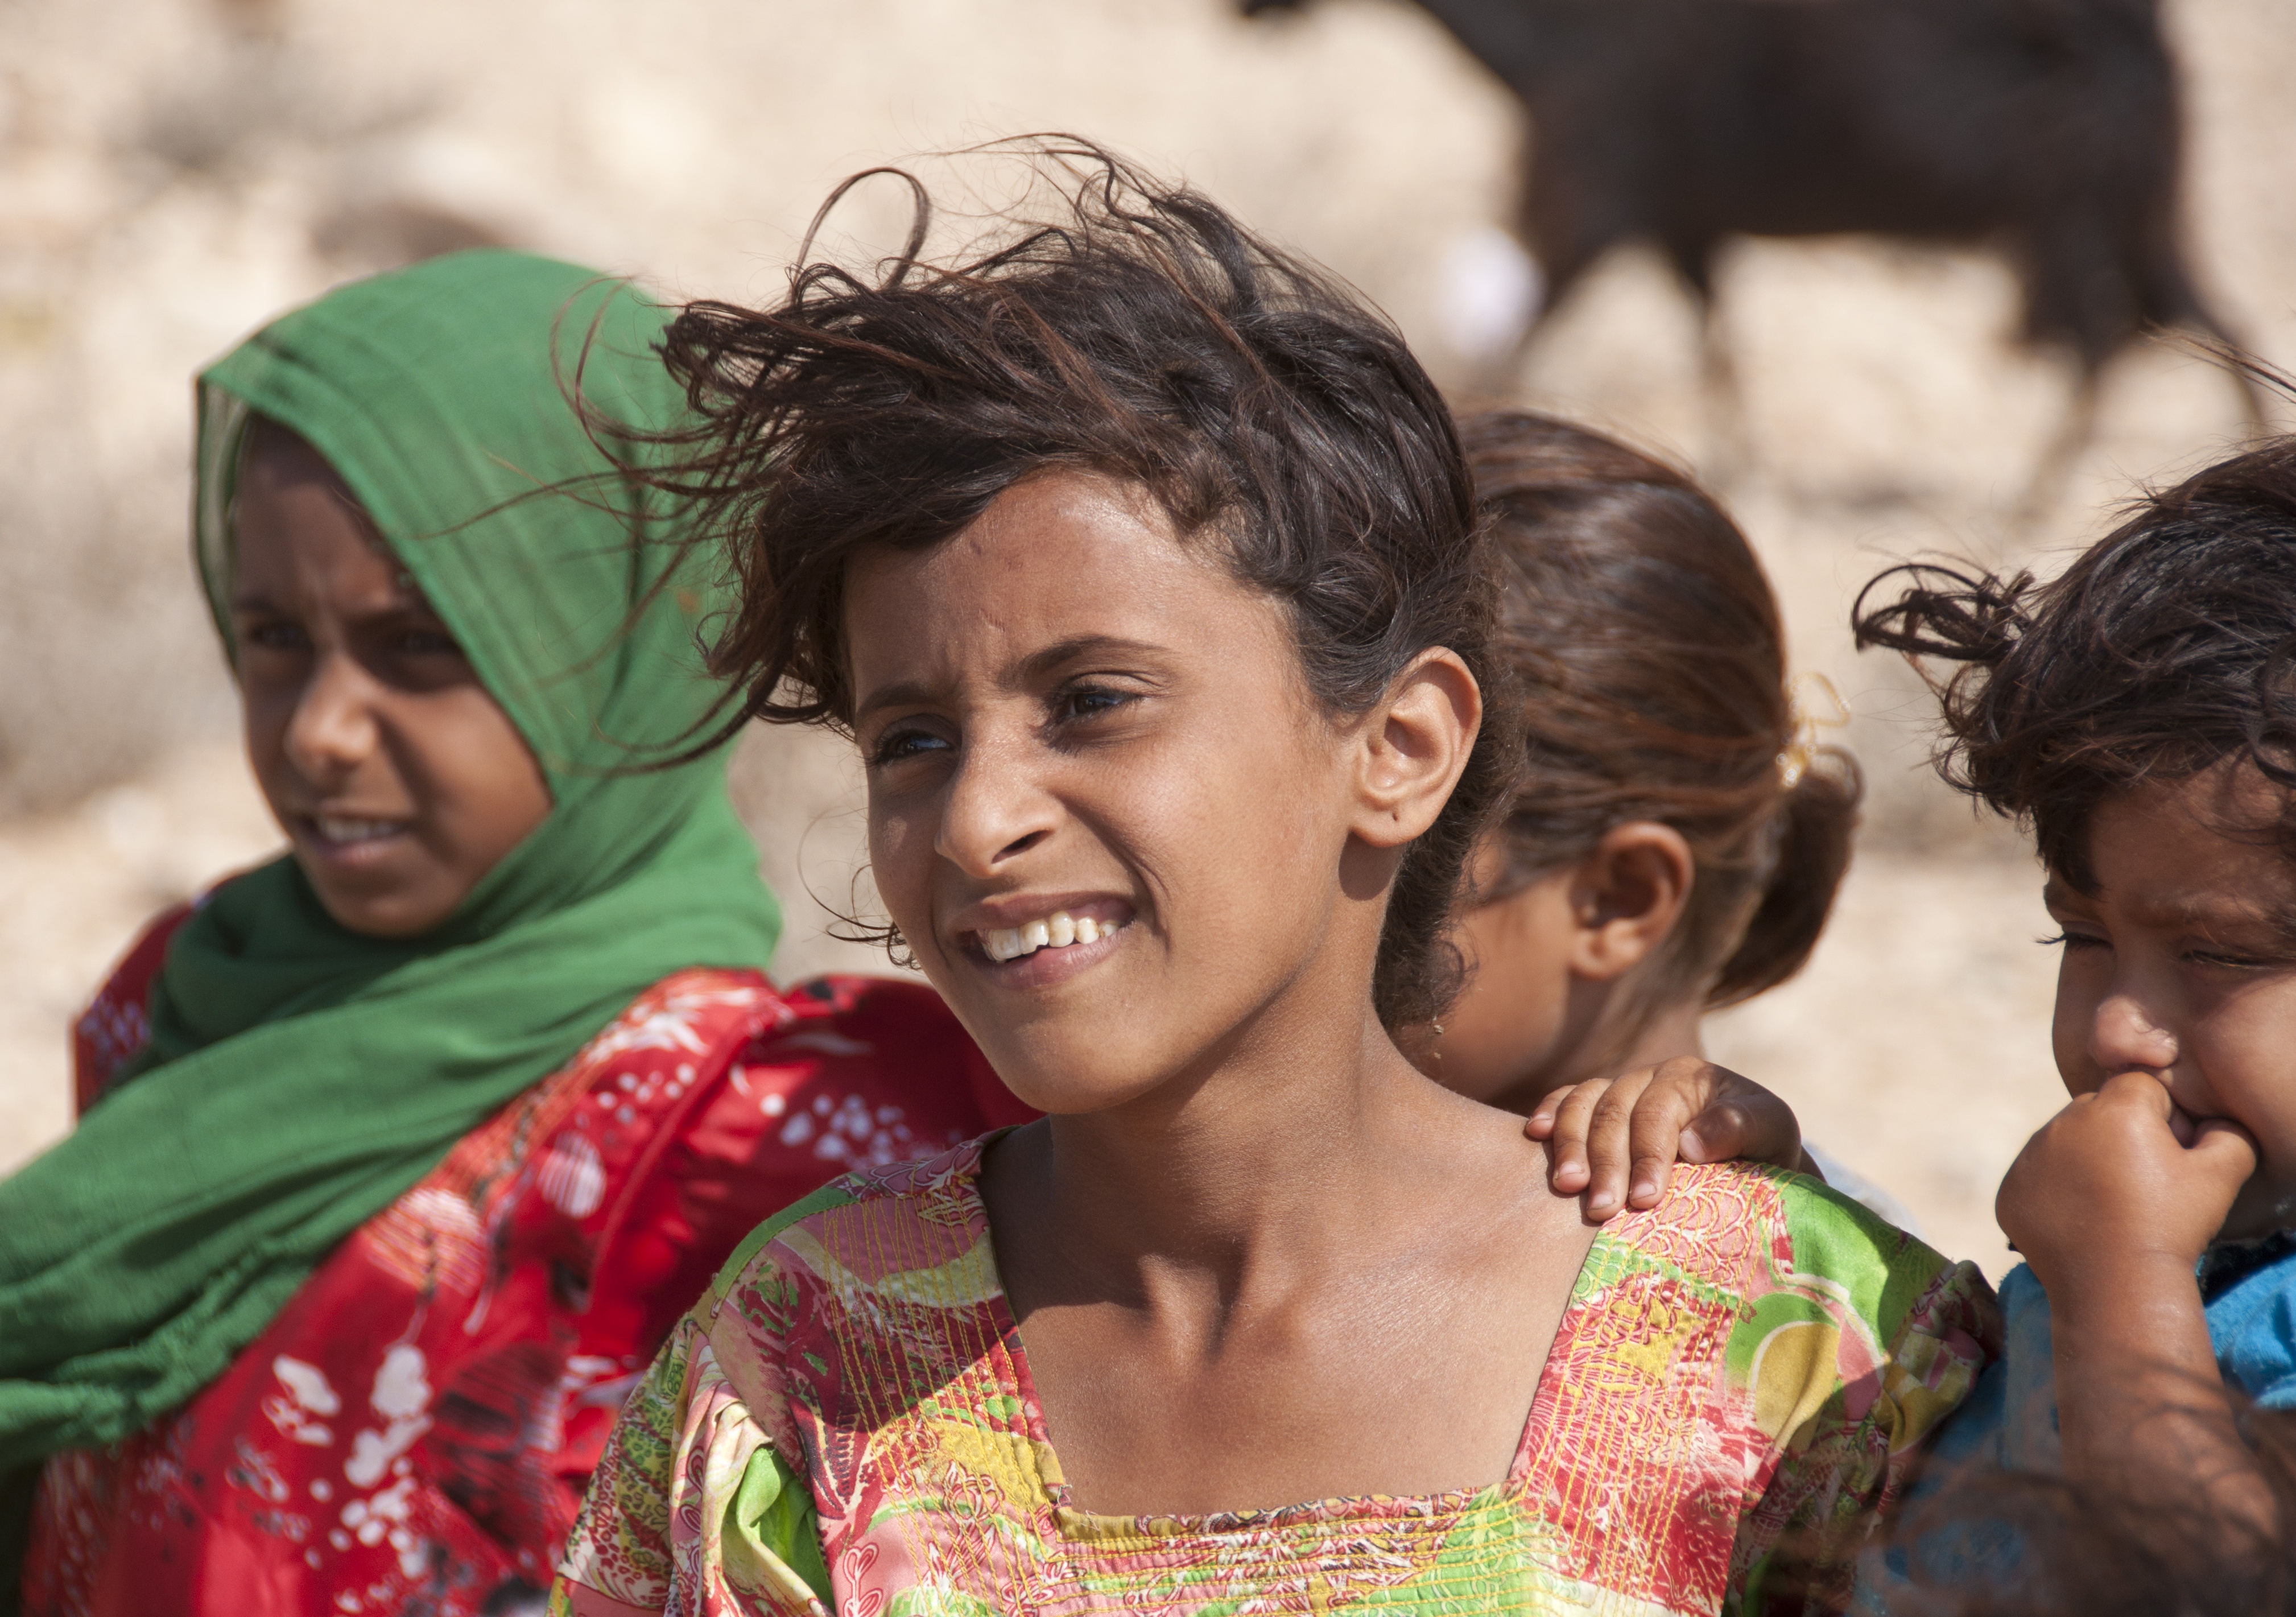 Yemeni girl. Image: iStock